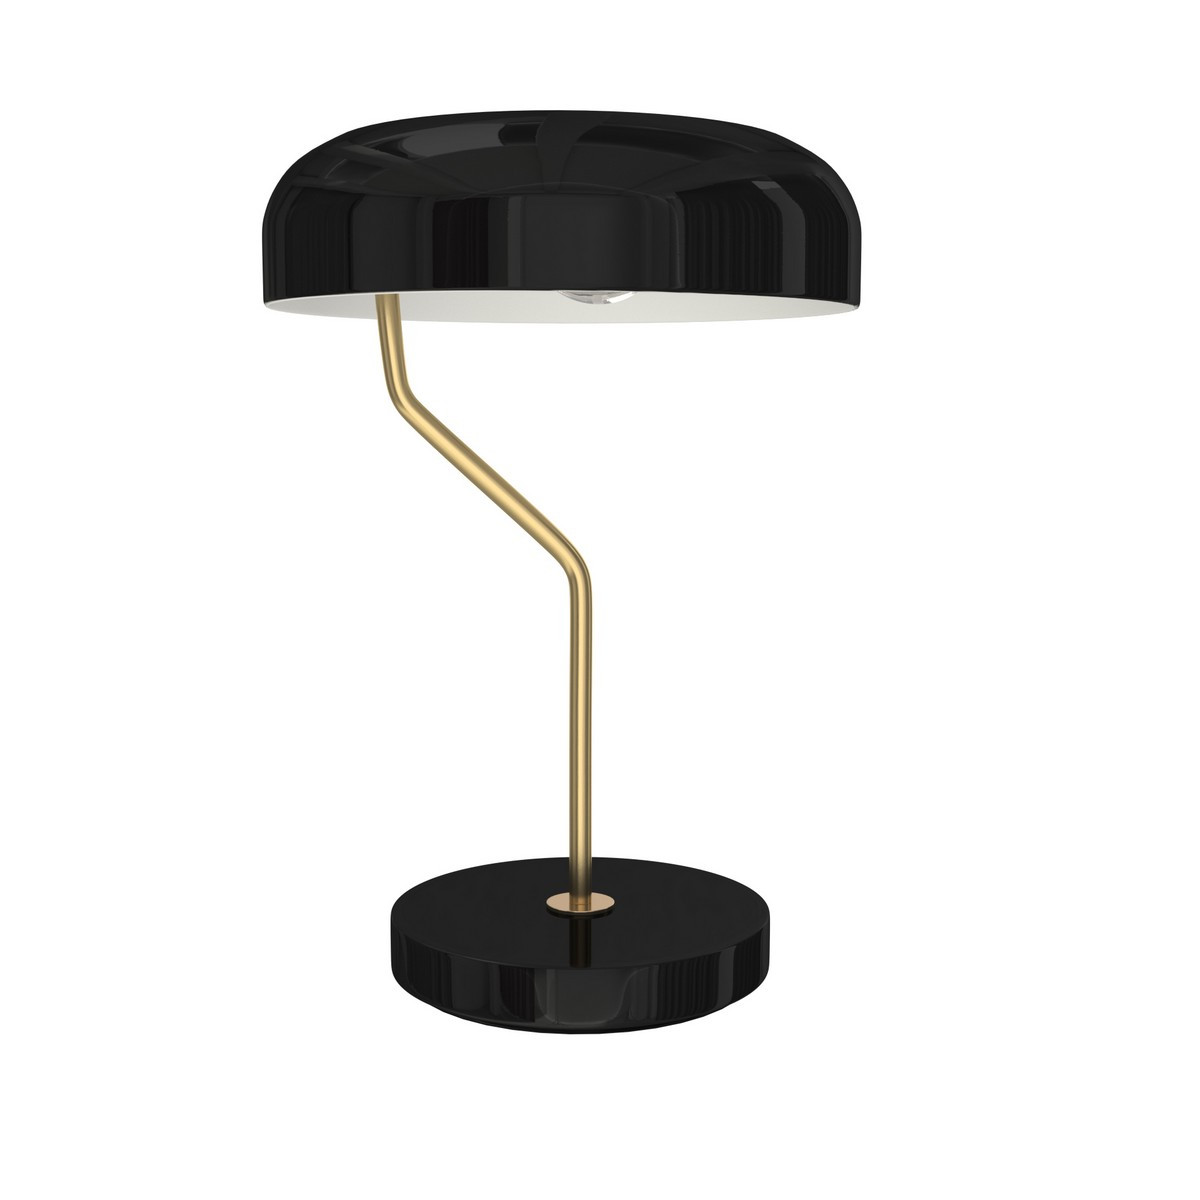 Lampe à poser champignon Métal noir haute - 35x52 cm - Hubsch 